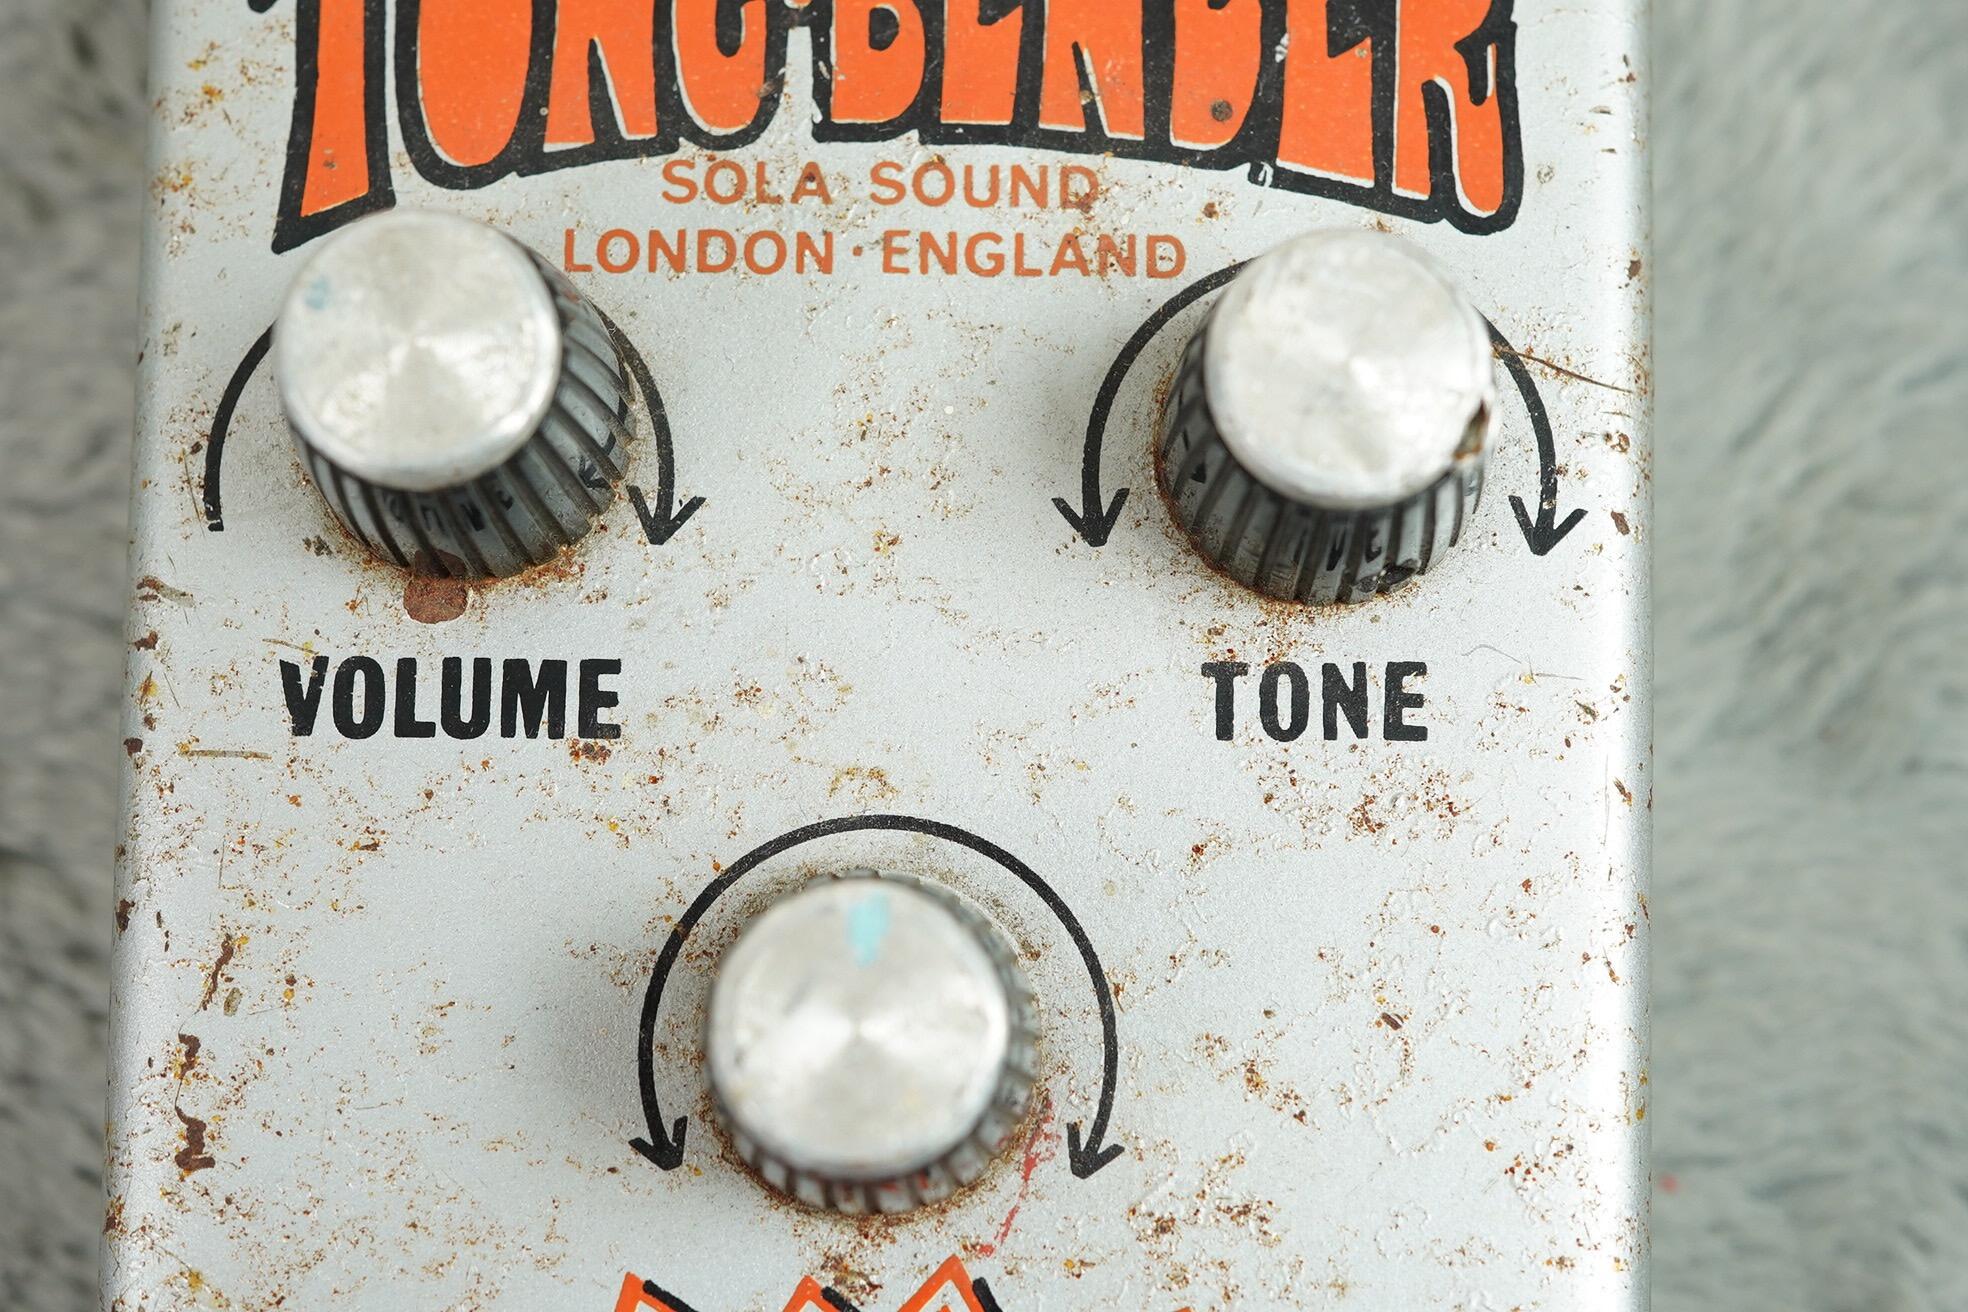 1976 Tonebender Fuzz